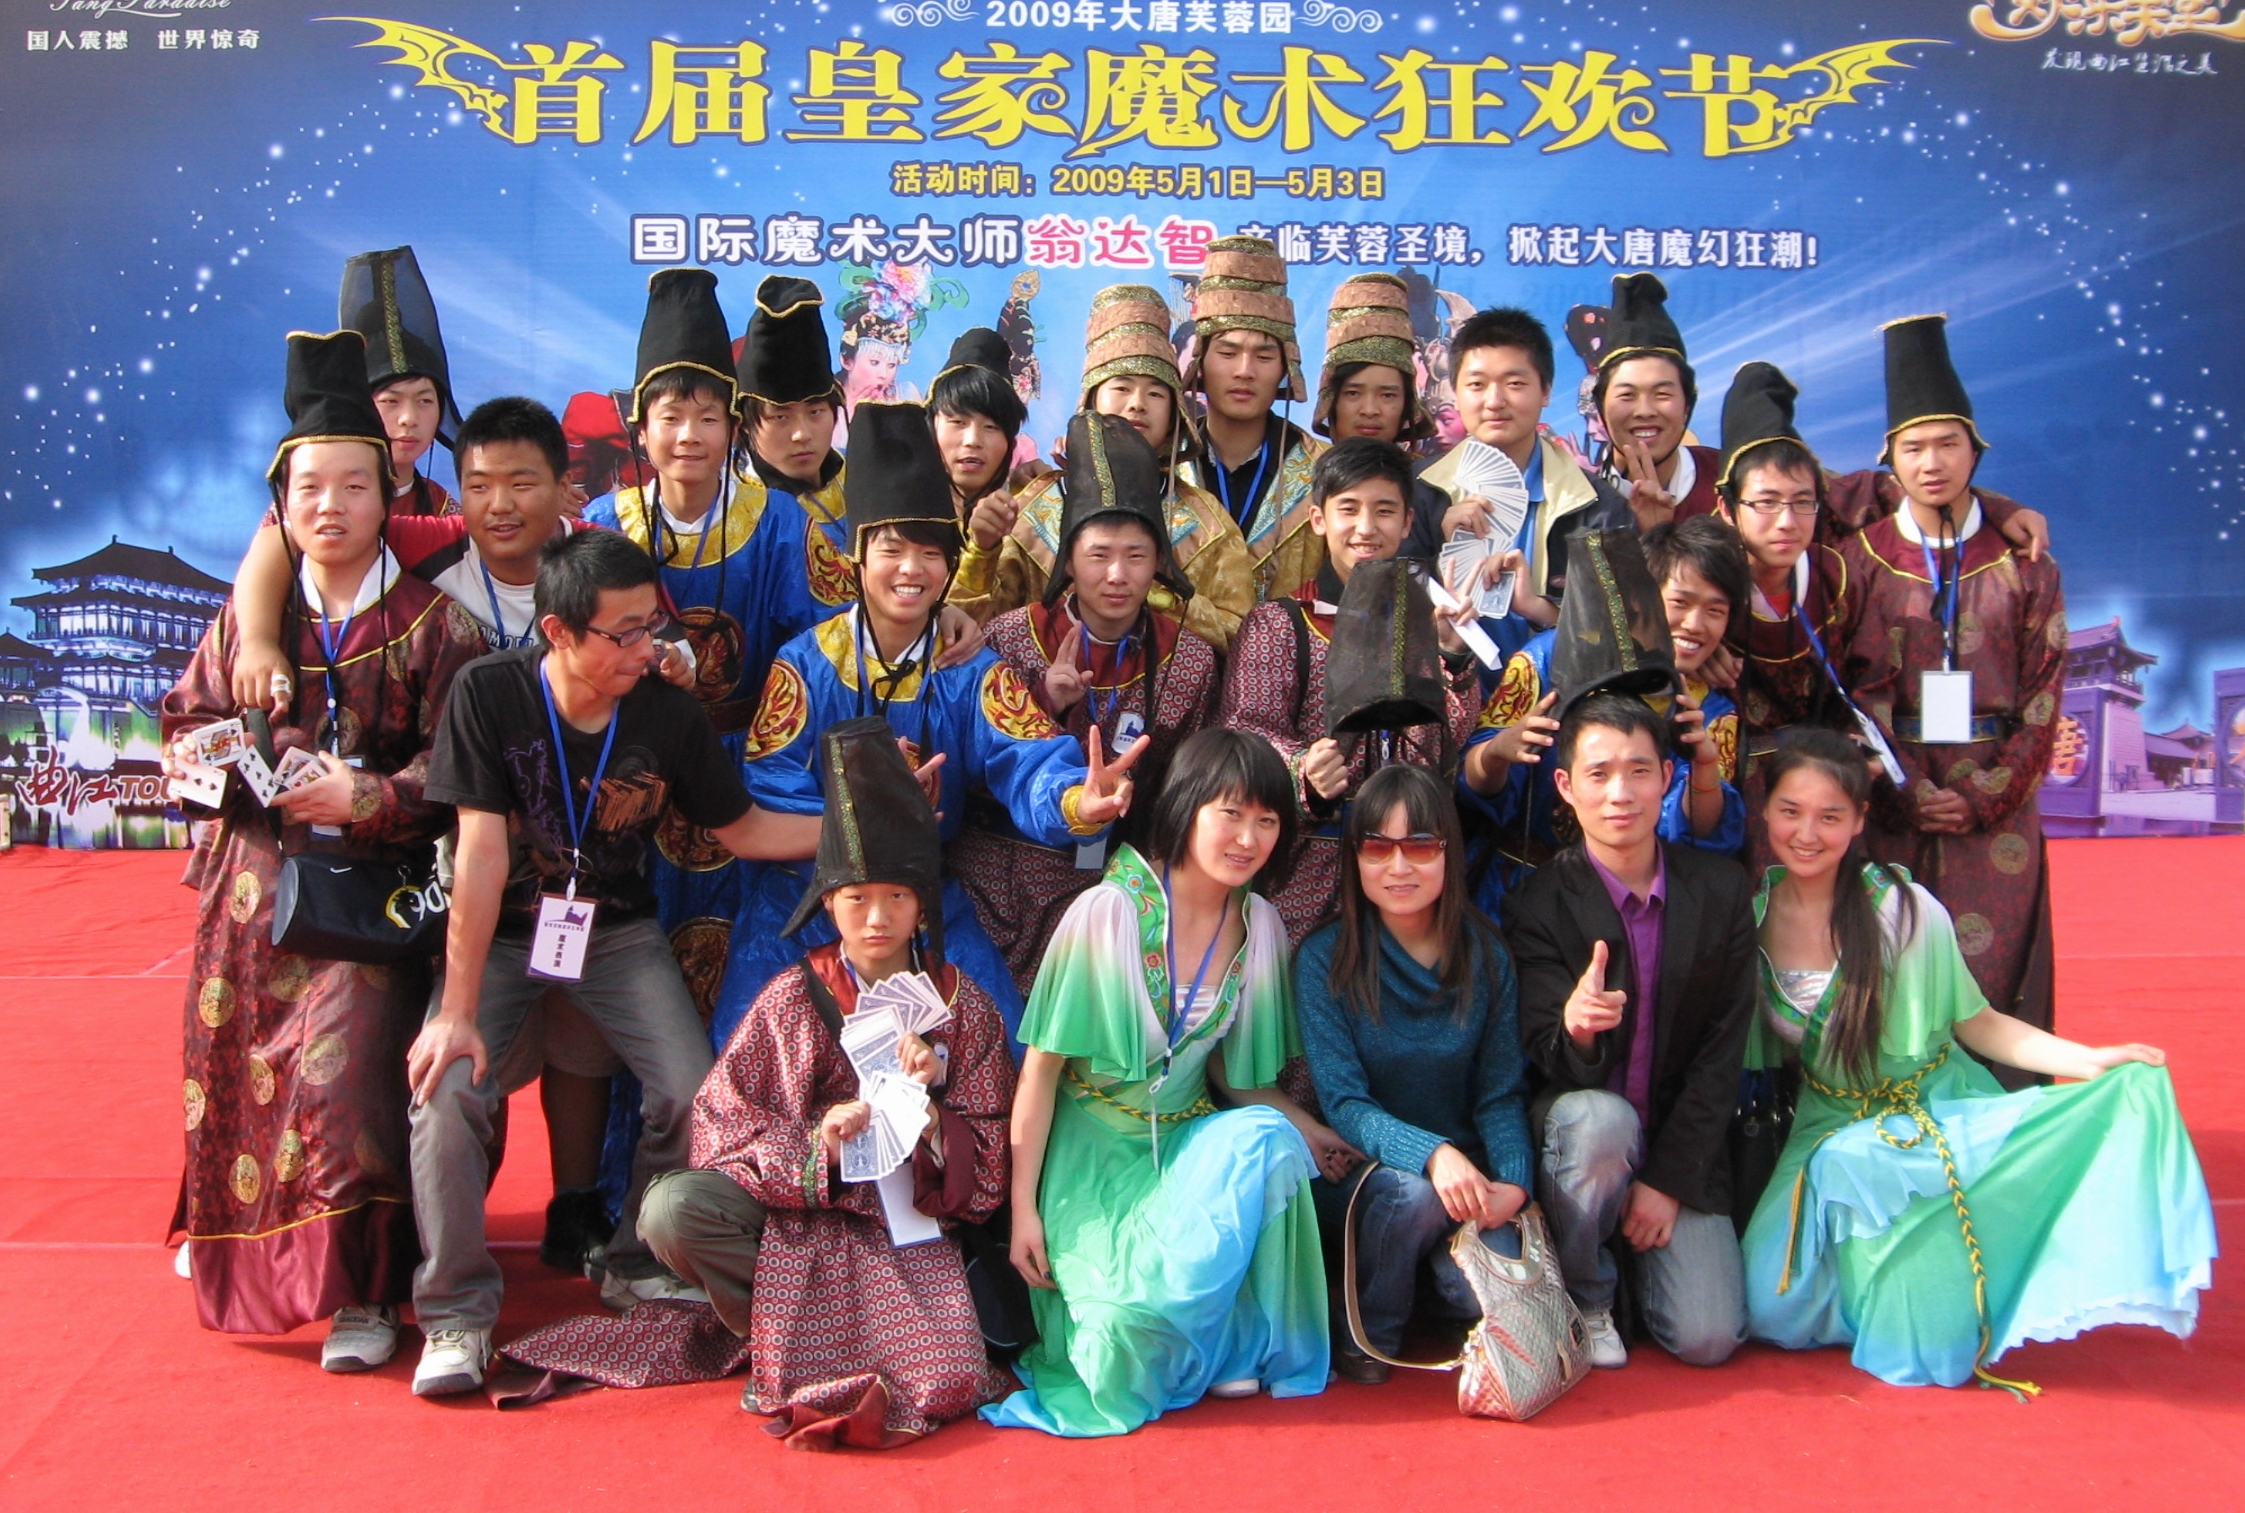 2009年西安首界皇家魔術狂歡節